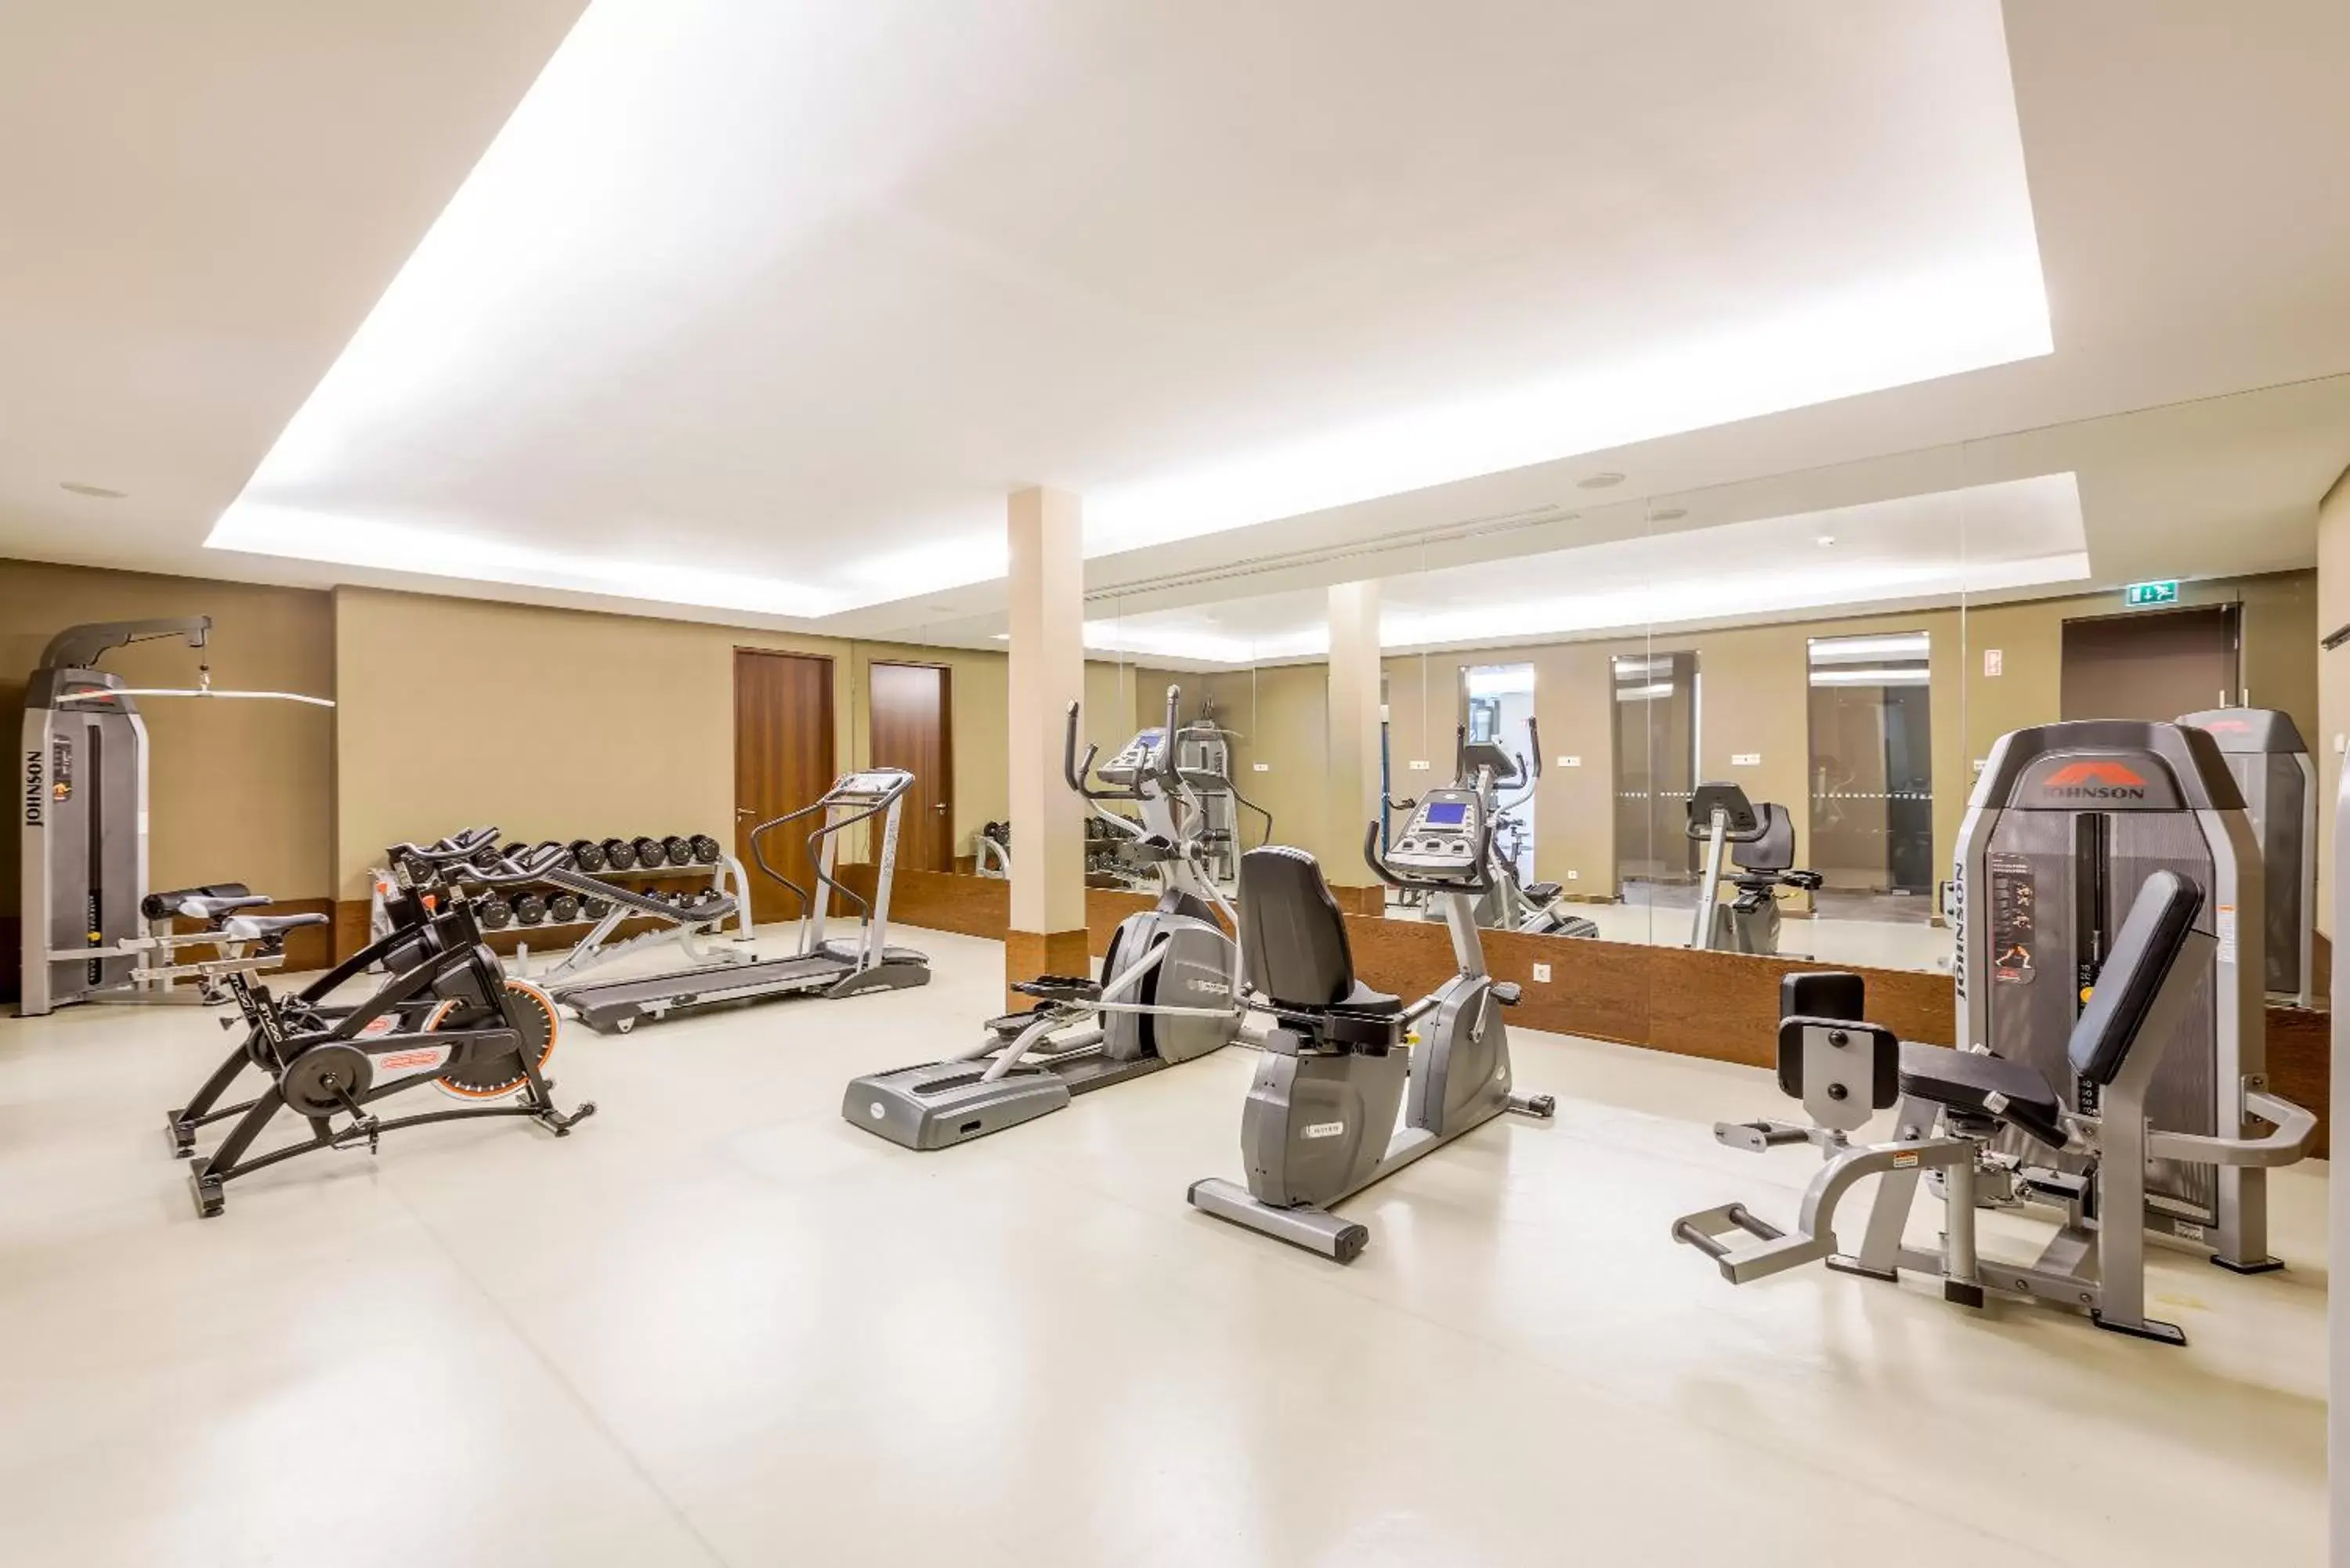 Fitness centre/facilities, Fitness Center/Facilities in Lago Montargil & Villas